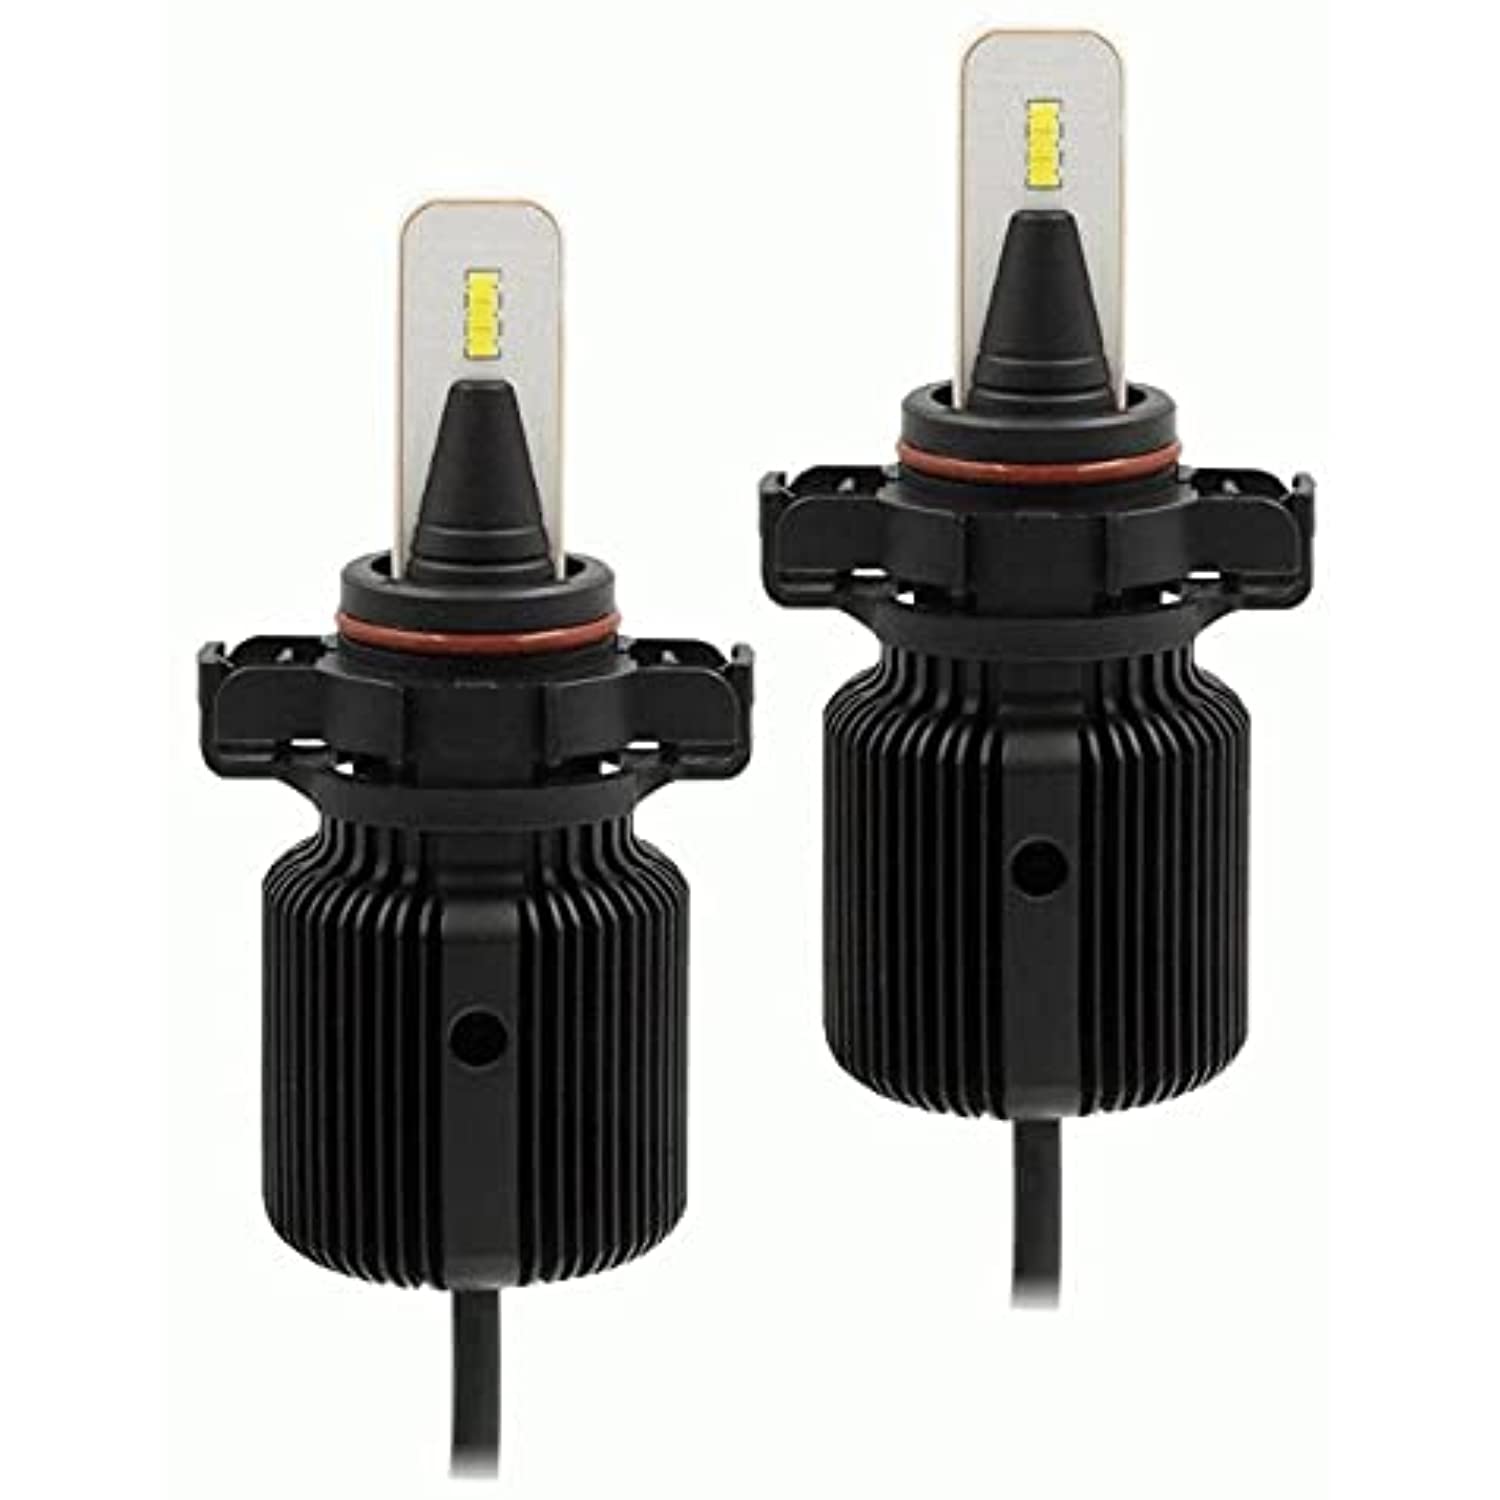 METRA - LED Bulbs Kit - PSX24 Single-Beam Pair (DL-PSX24)